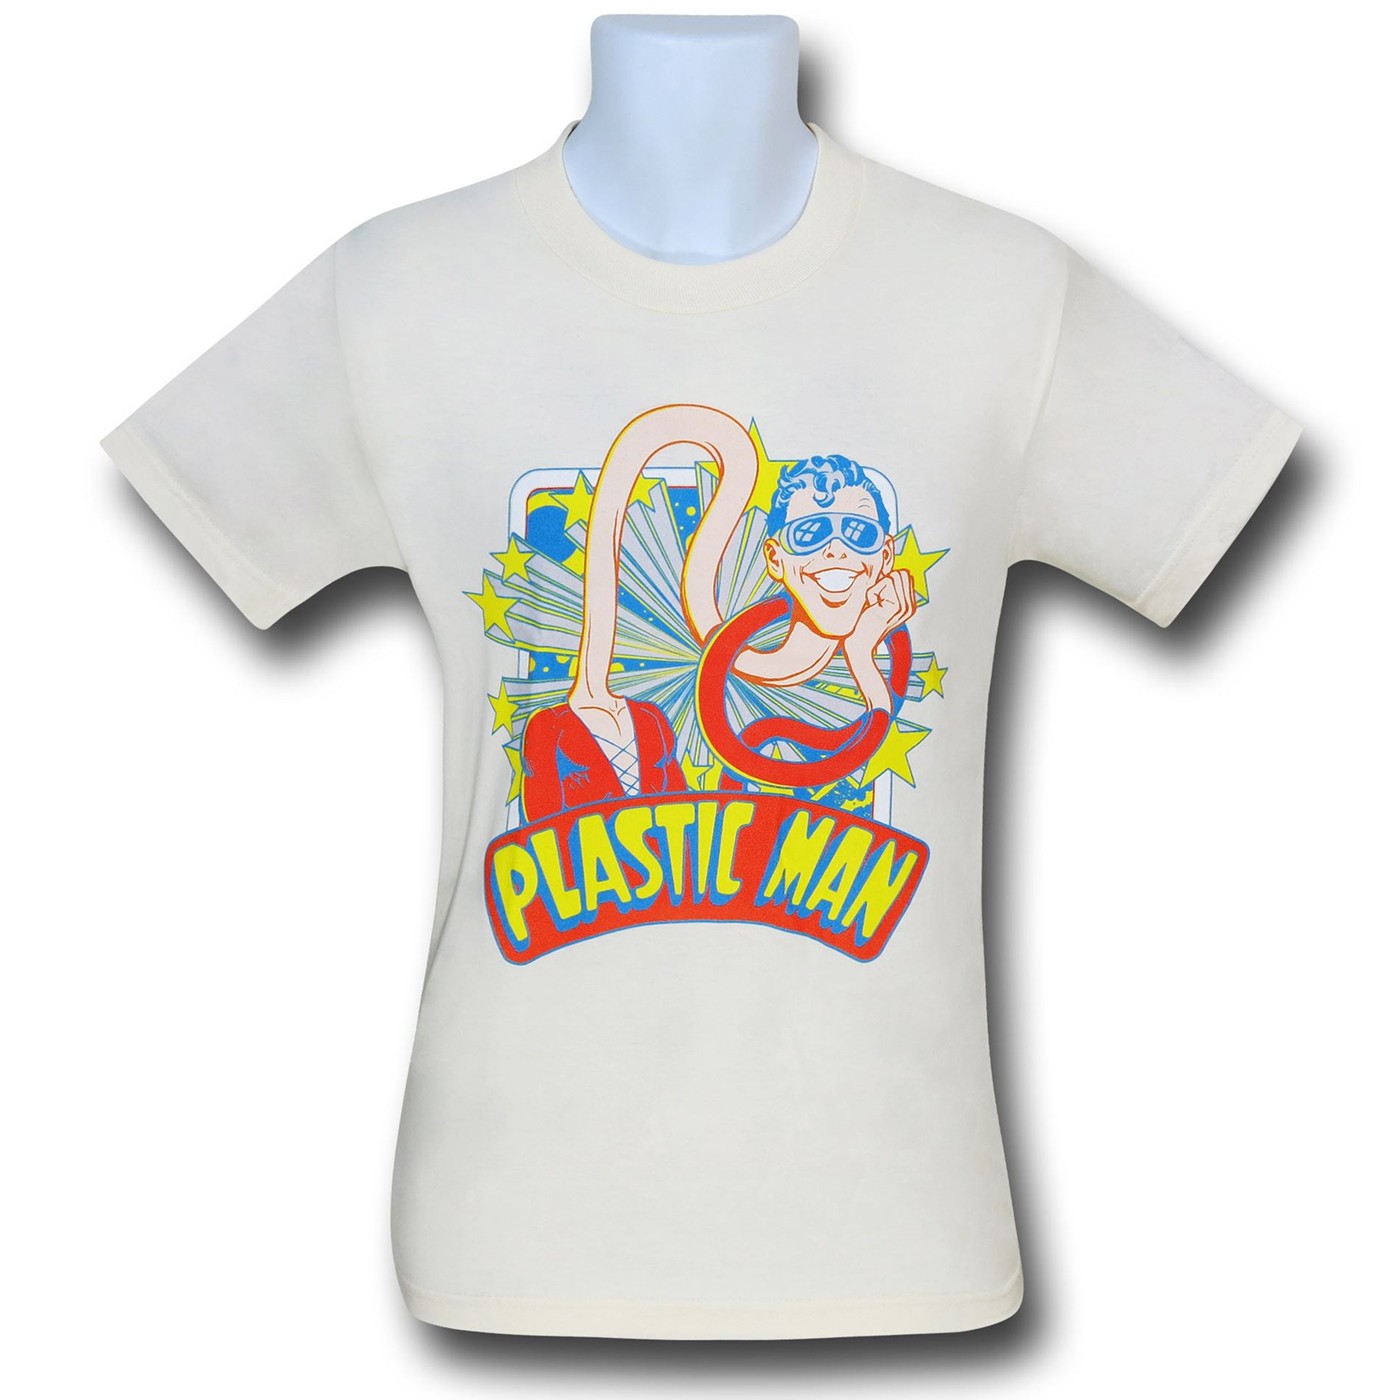 Plastic Man Stars T-Shirt